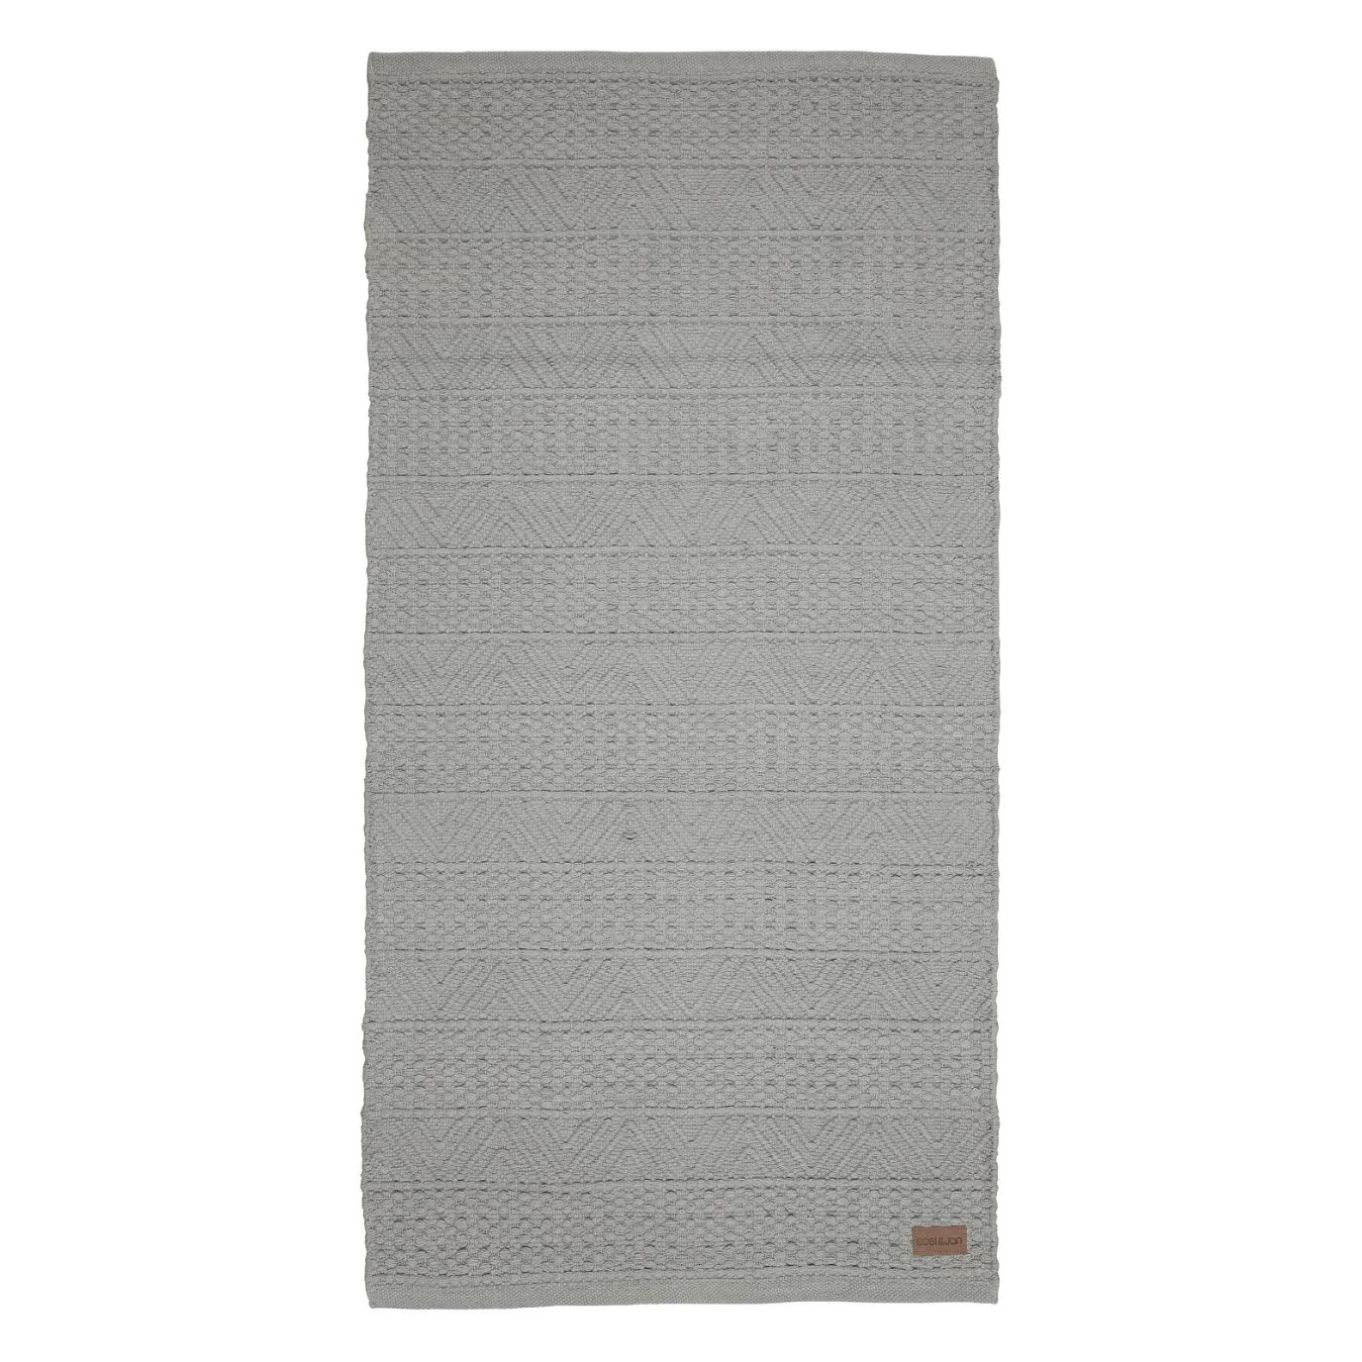 Beatrice en grå gångmatta i 100% bomull som är vävd i ett härligt mönster i mått 70 x 140 cm.